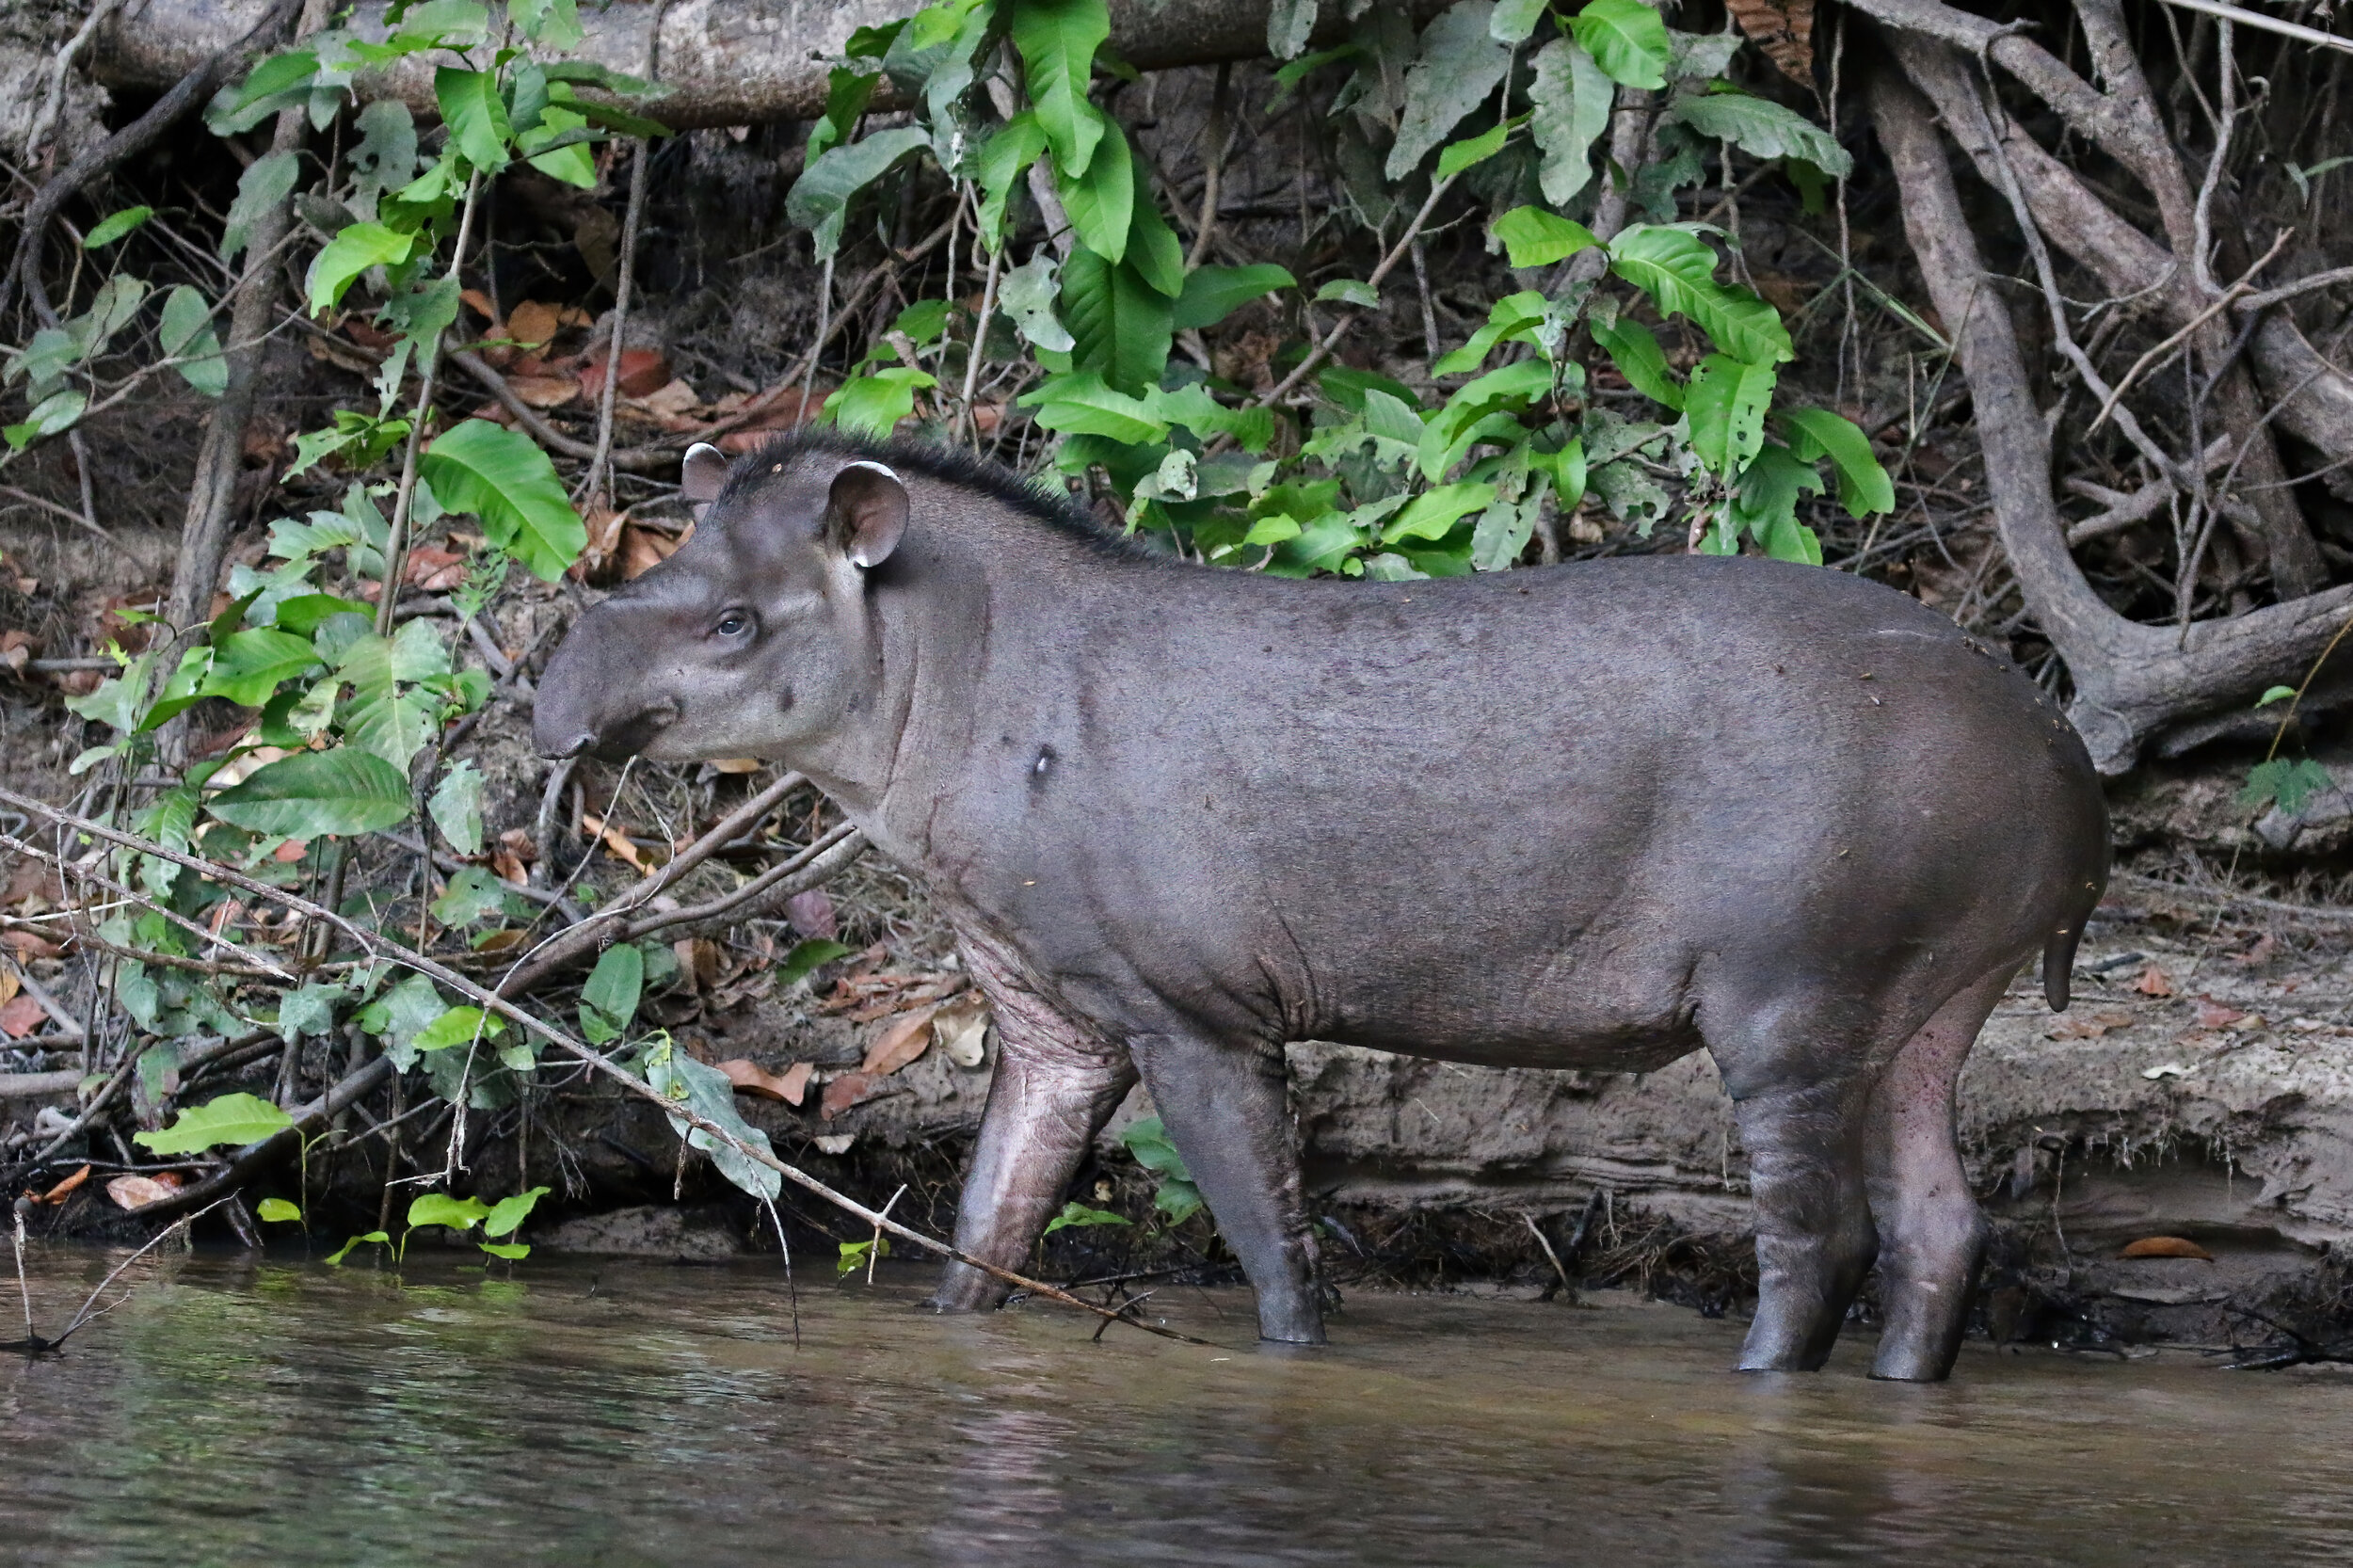 Charles J Sharp_South American tapir (Tapirus terrestris), Cristalino River, Southern Amazon, Brazil.jpeg